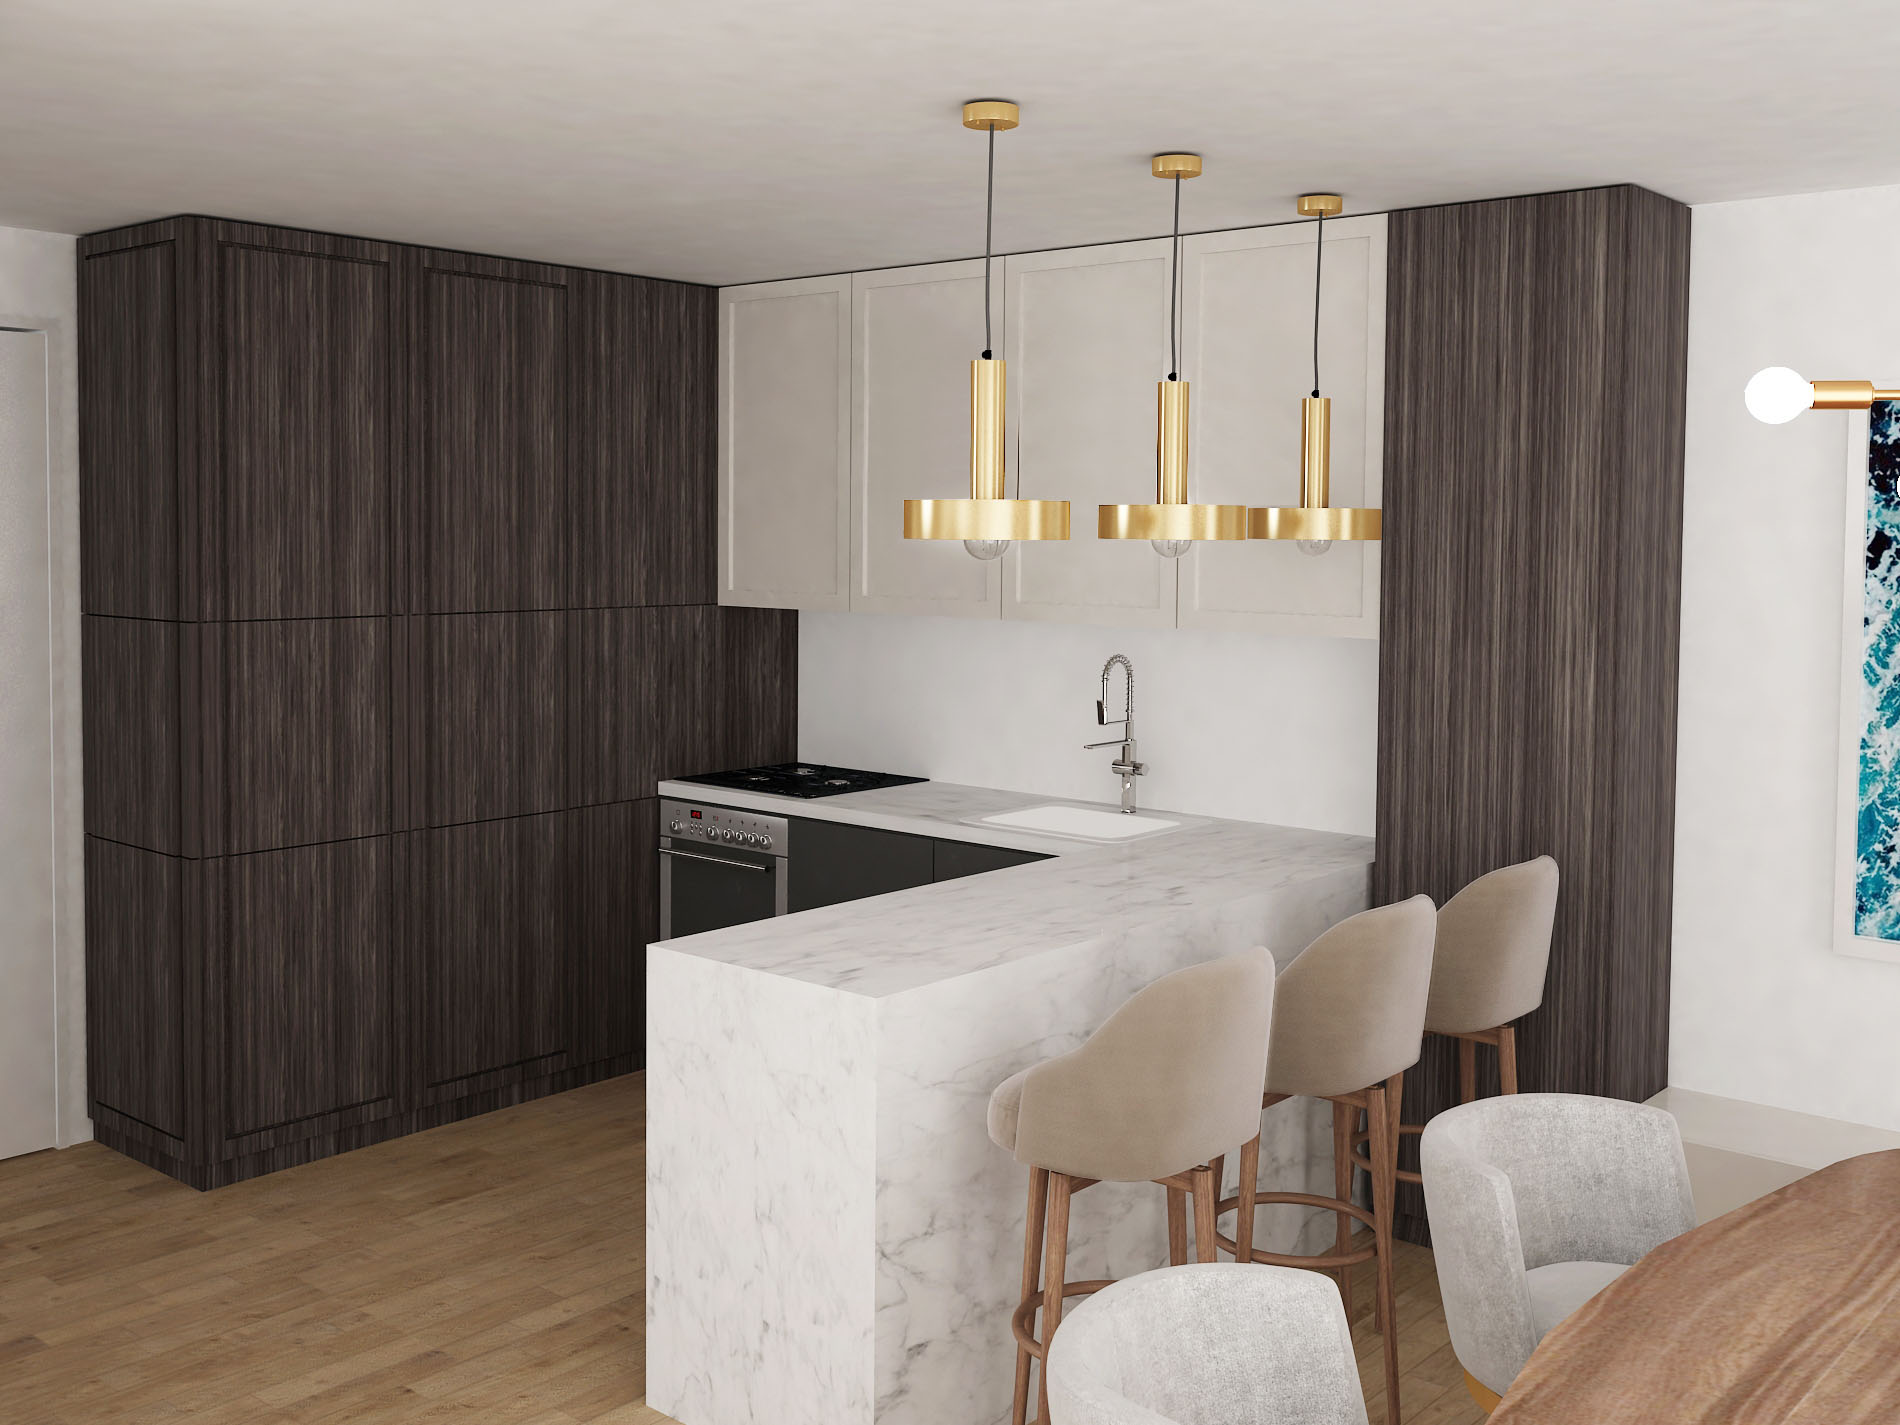 Kitchen interior design with dark wooden cabinets, marble kitchen island and gold details.